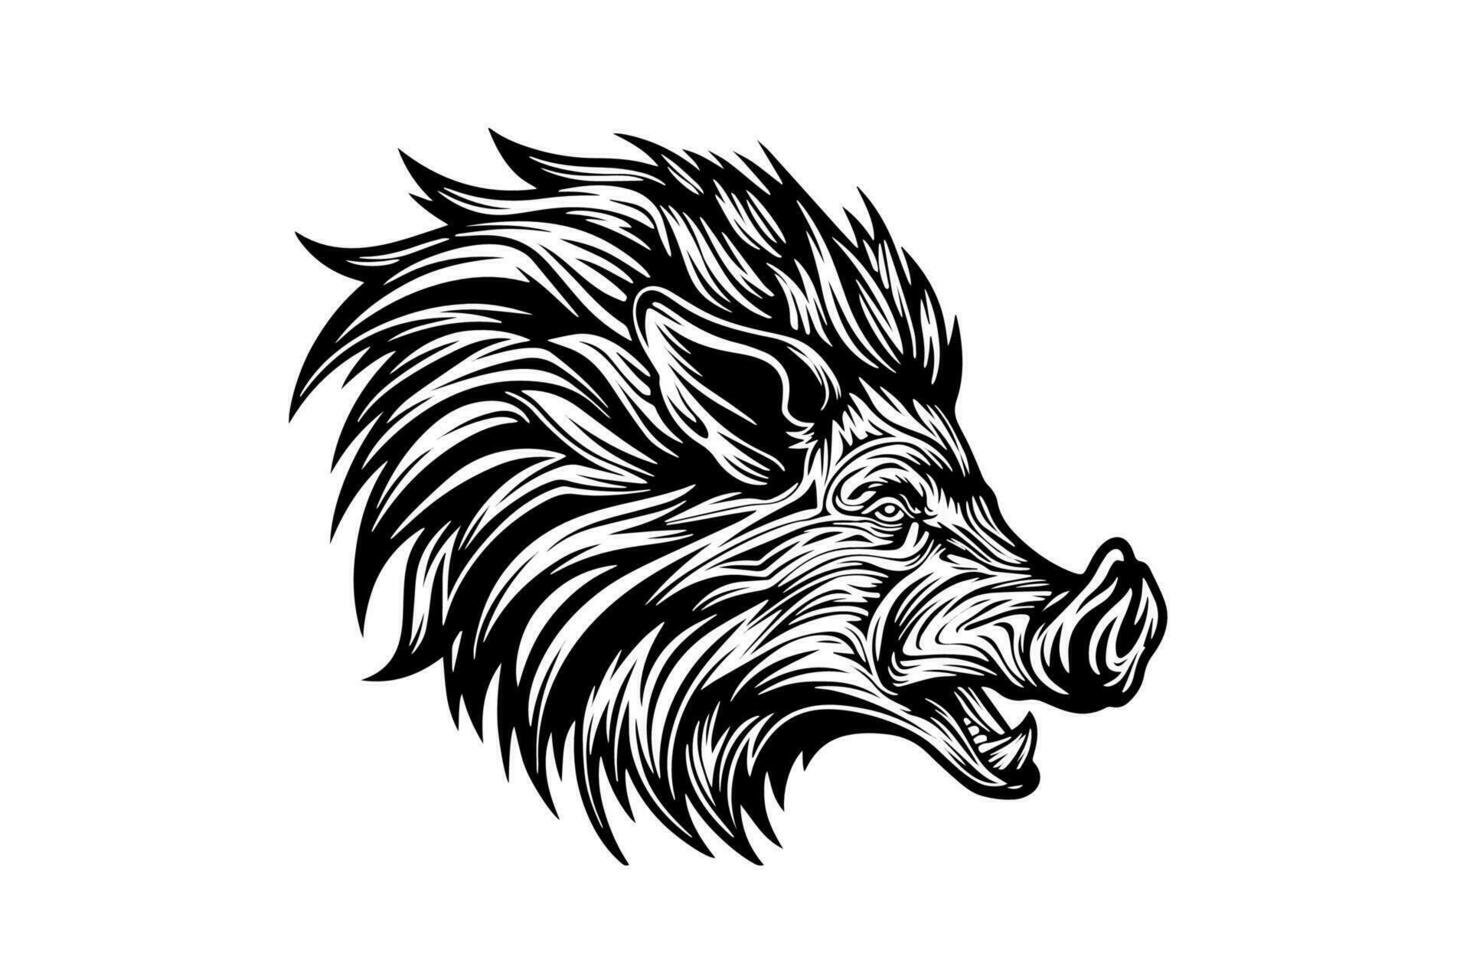 sanglier ou sauvage porc tête dessin encre esquisser, ancien gravé style vecteur illustration.